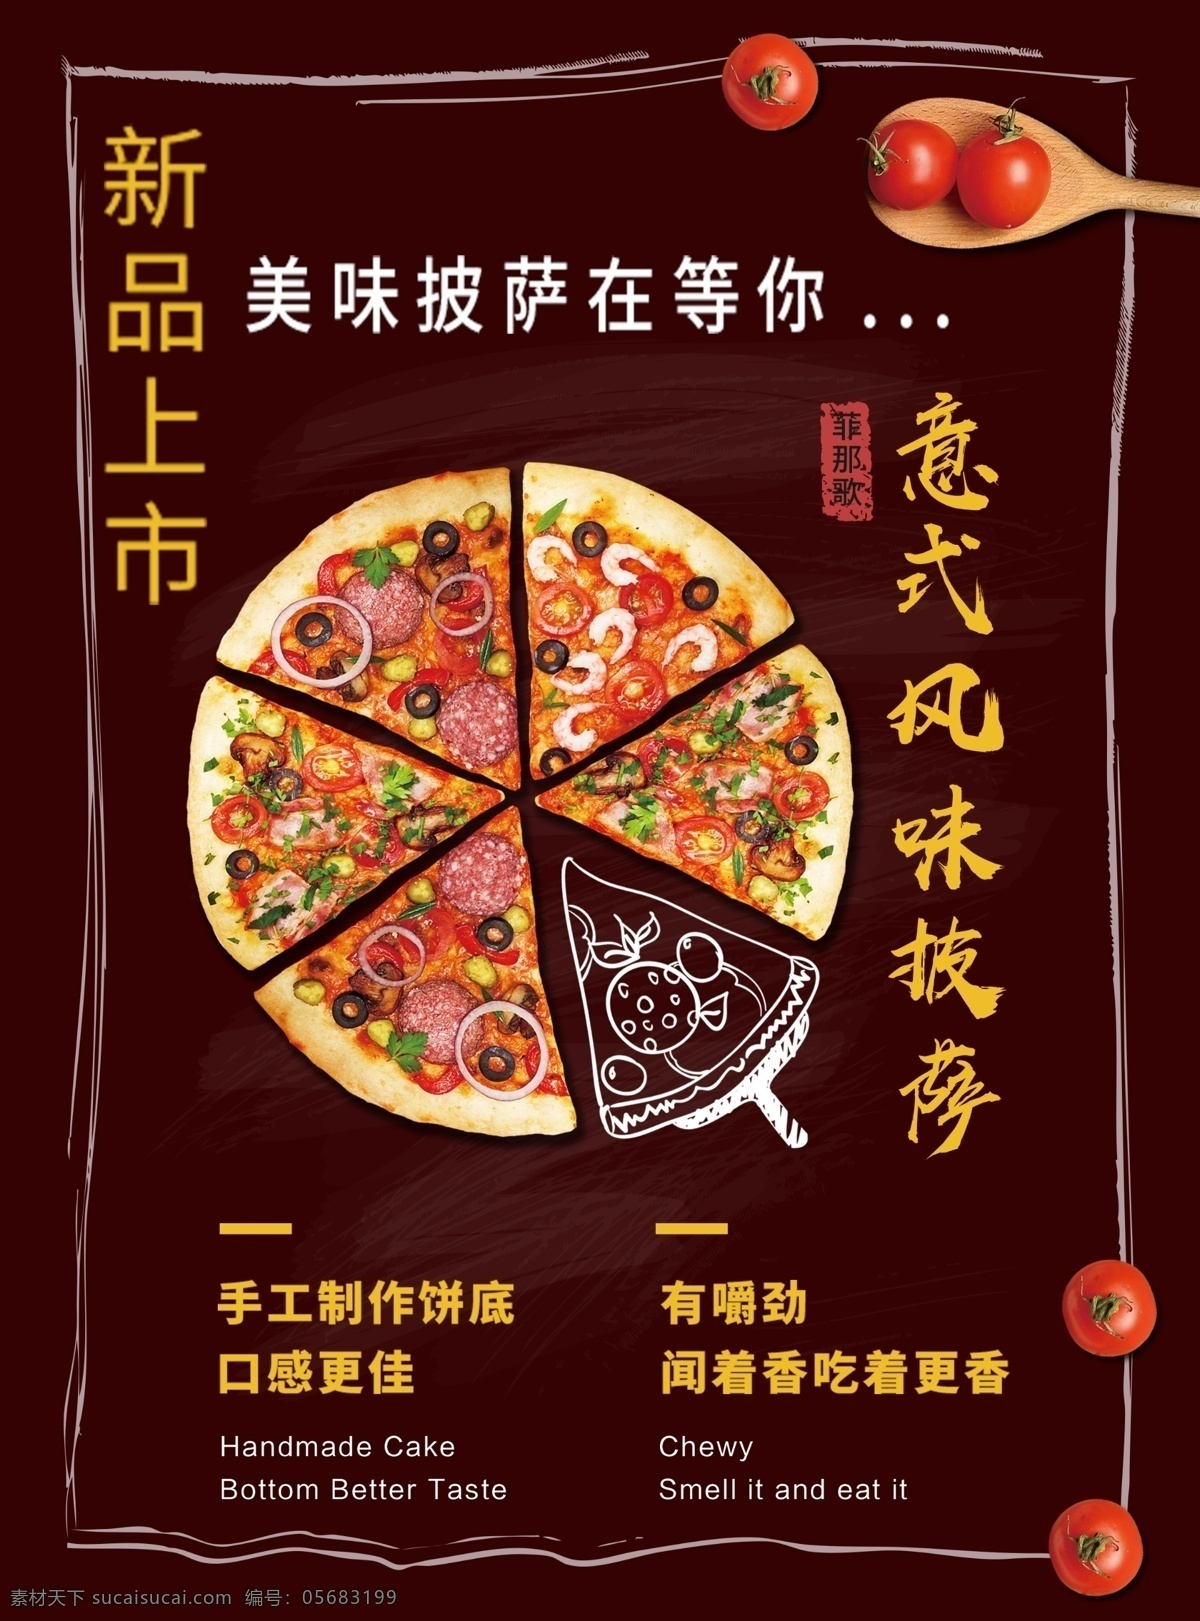 意 式 风味 披萨 促销 海报 意式风味披萨 促销海报 披萨海报 披萨展板 特色披萨 广告设计海报